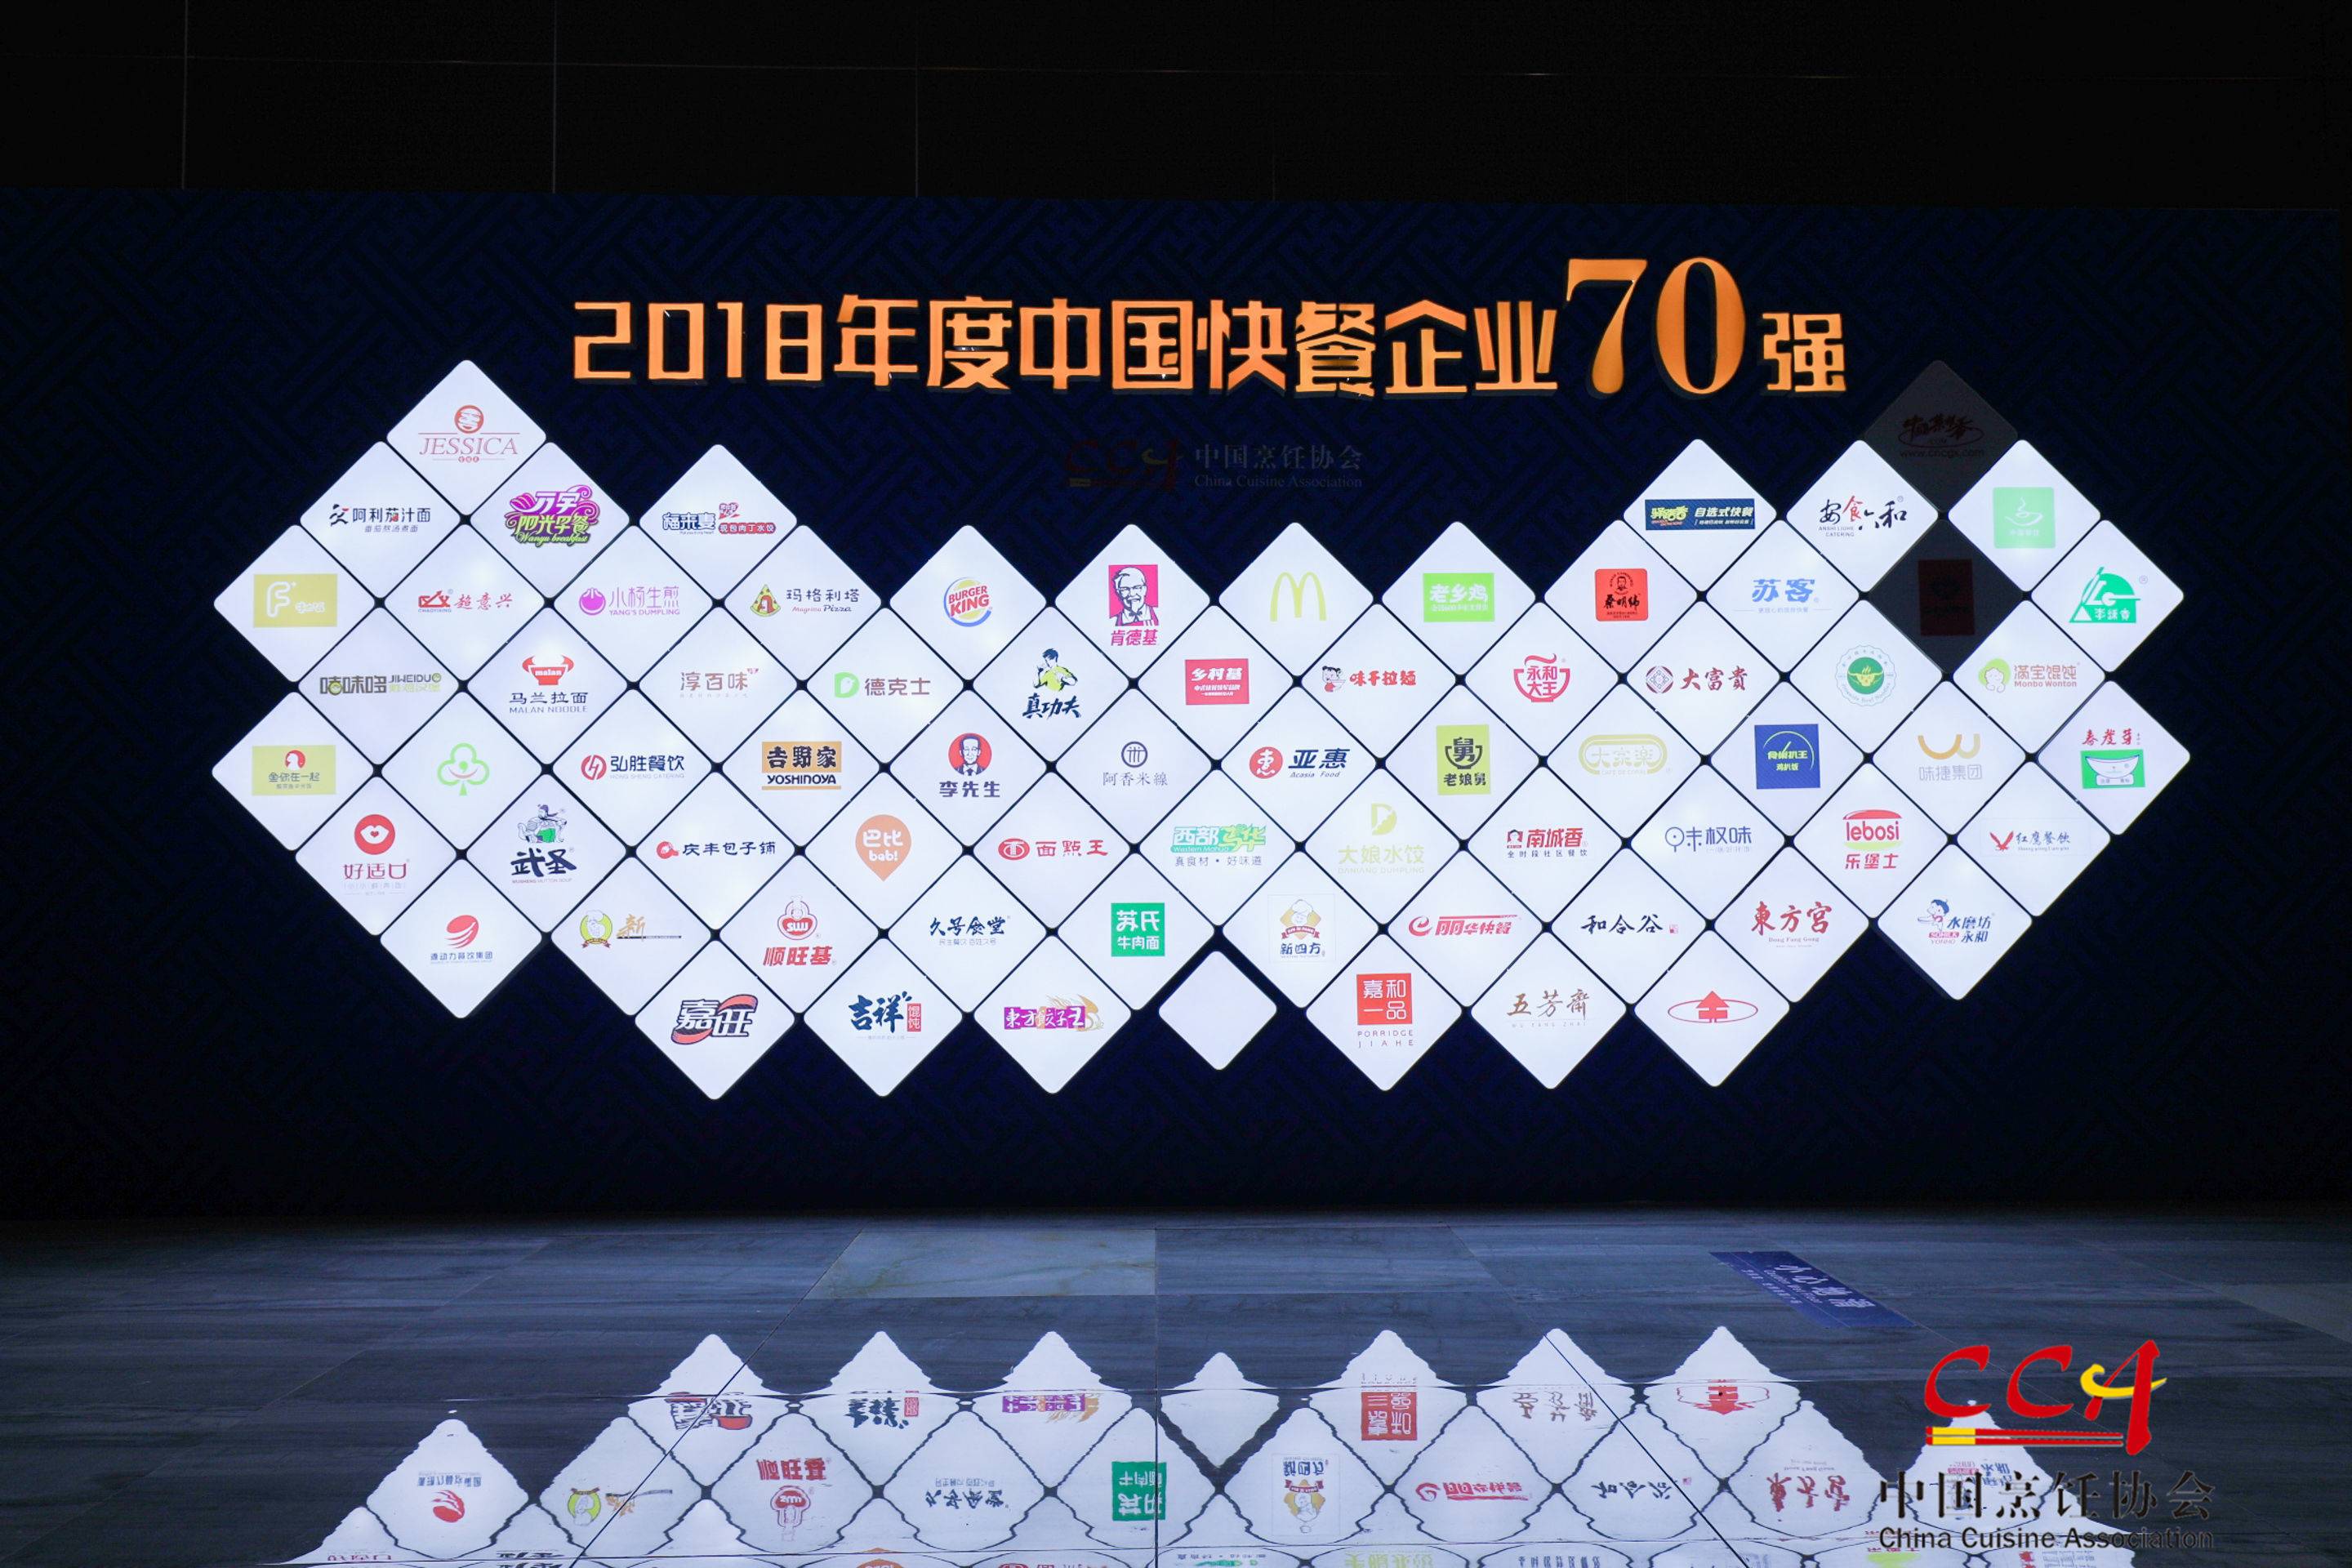 2018年度中国快餐企业70强，鱼你在一起连续两年入围榜单